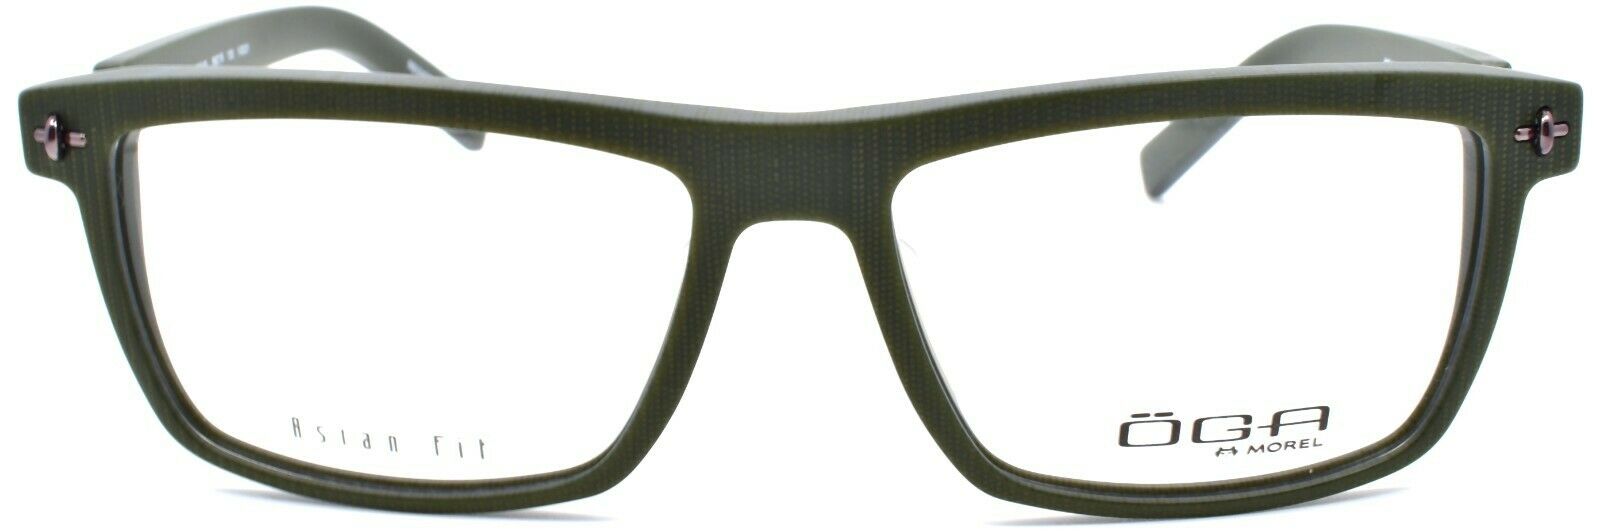 2-OGA by Morel 2954S VG031 Men's Eyeglasses Frames Asian Fit 56-16-130 Olive-3604770890273-IKSpecs